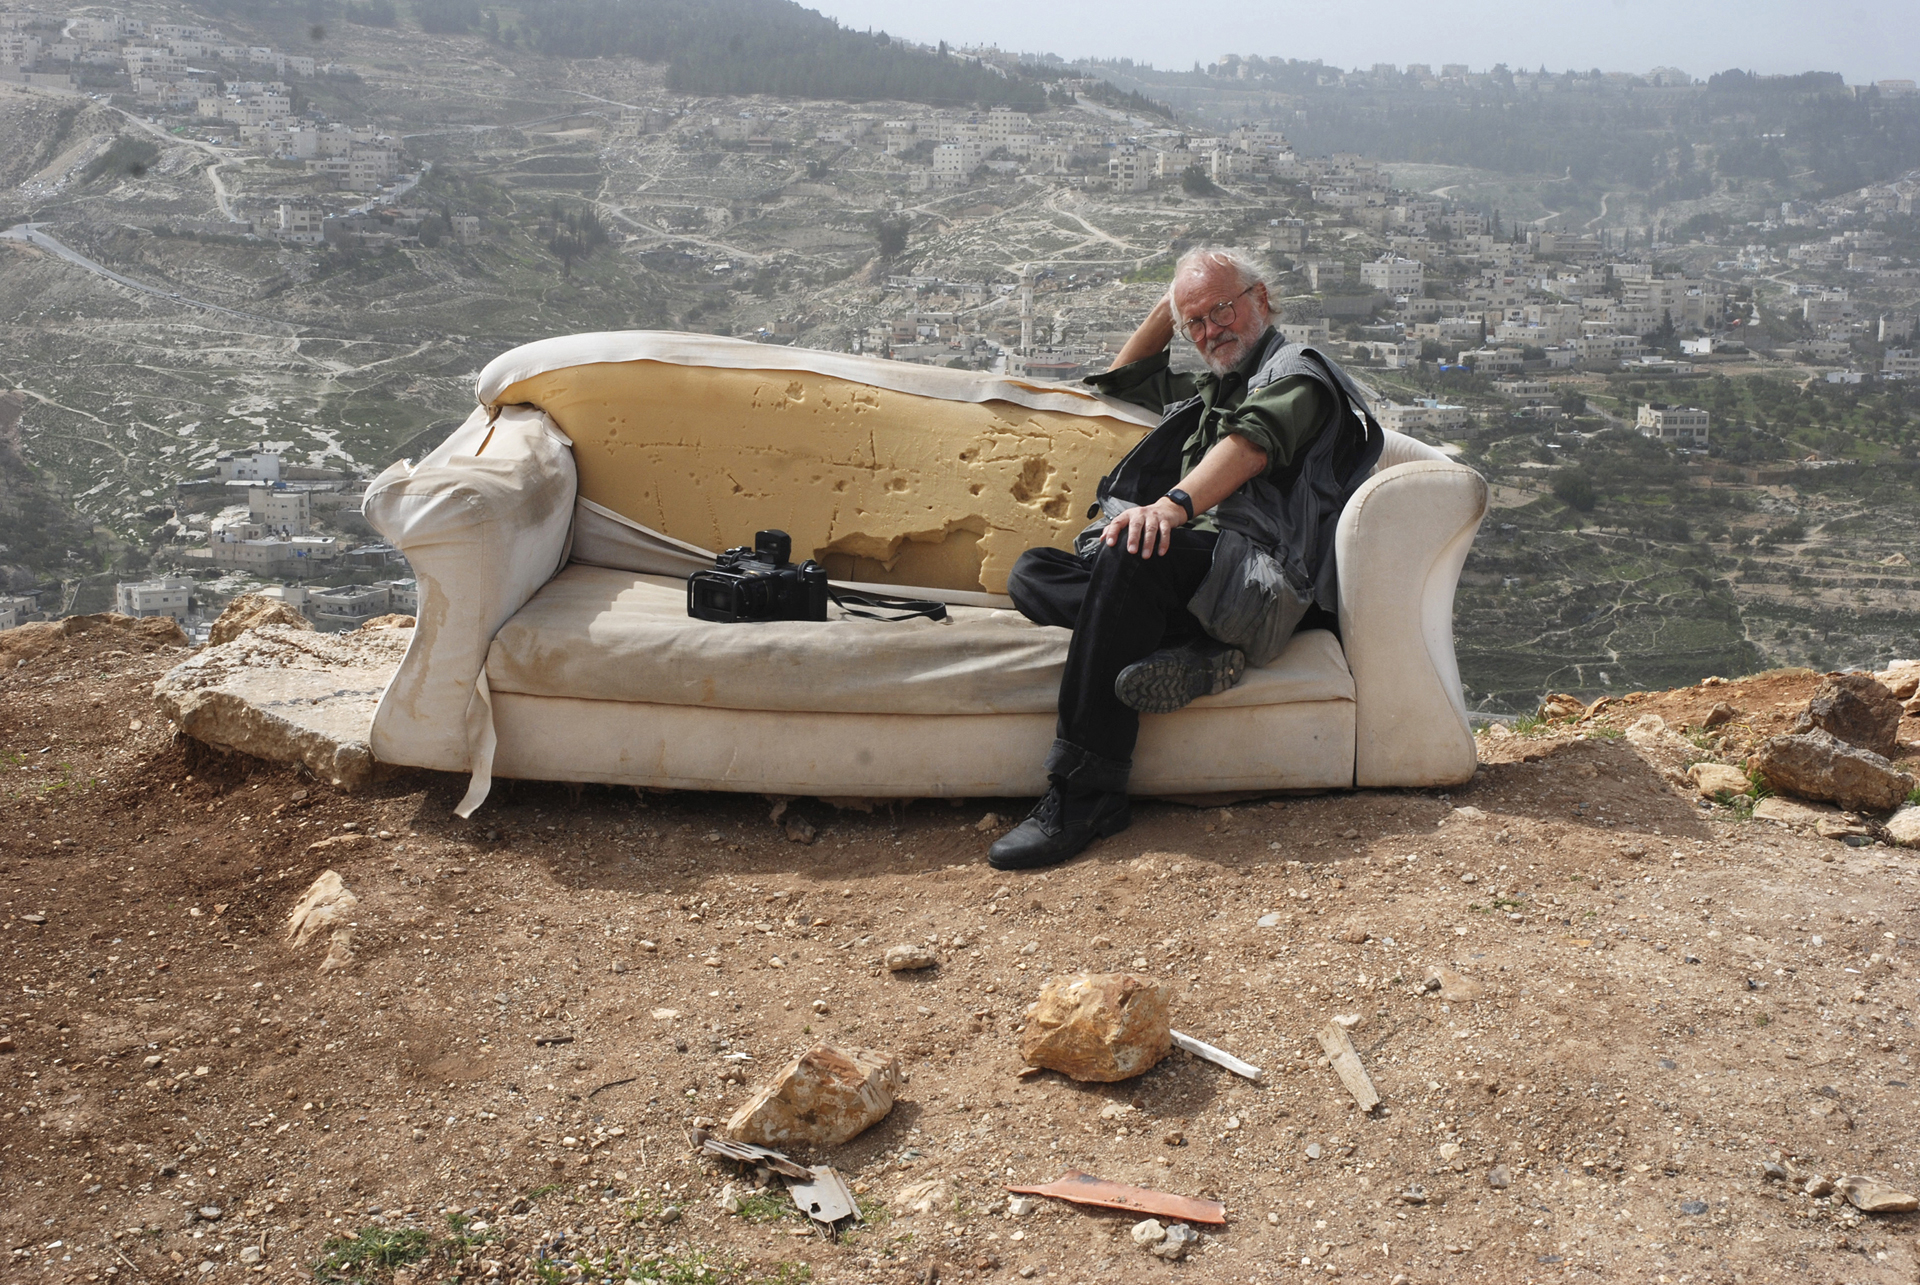 05_Josef Koudelka | East Jerusalem | by Gilad Baram.jpg